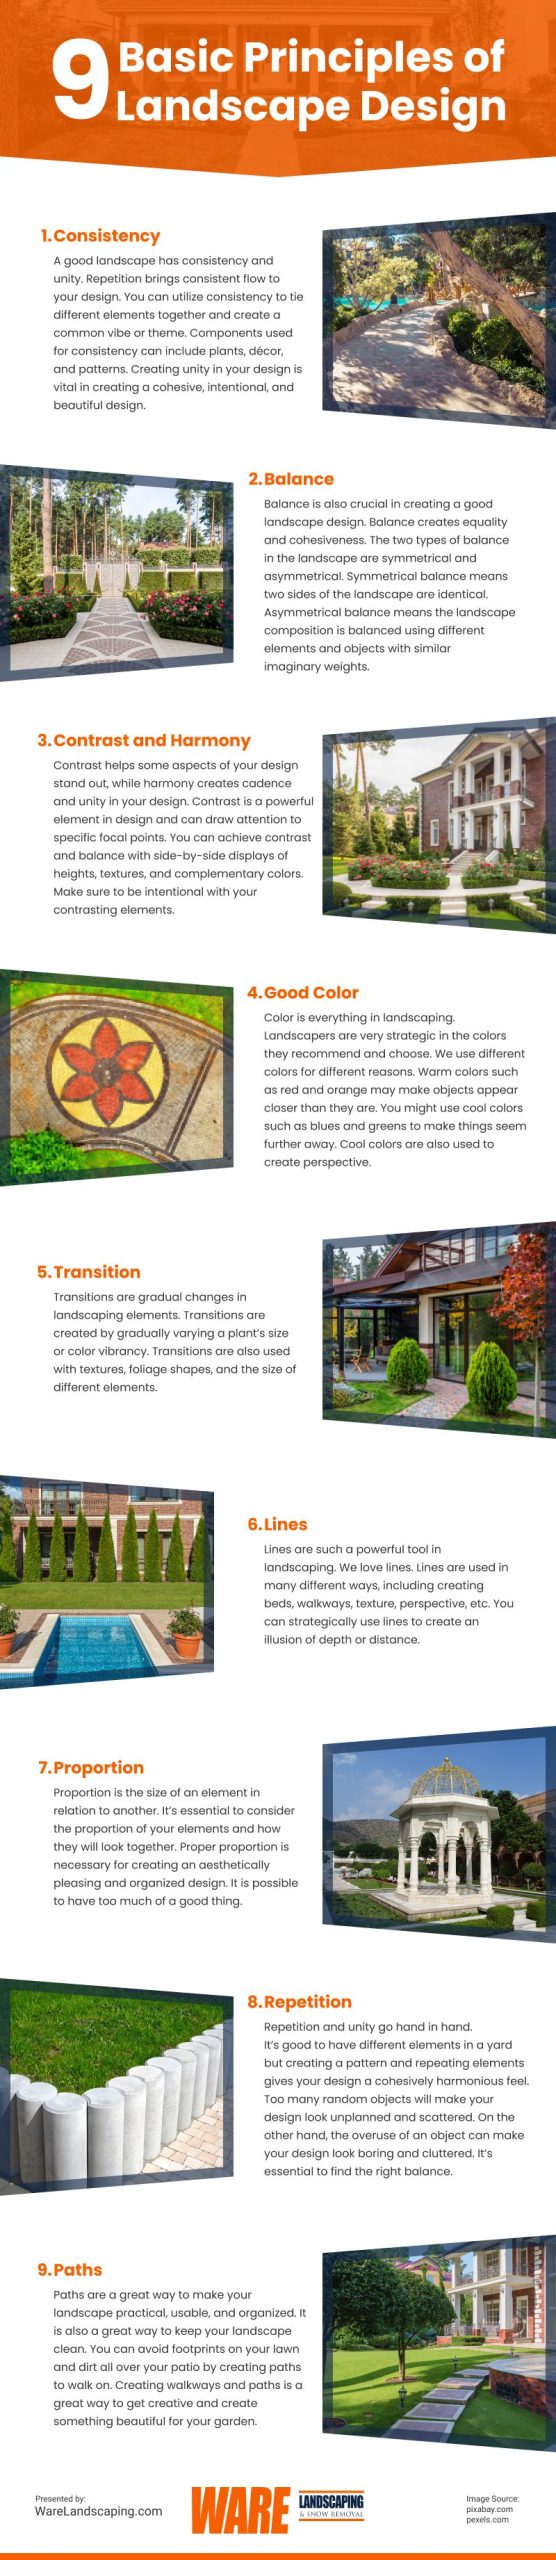 9 Basic Principles of Landscape Design Infographic